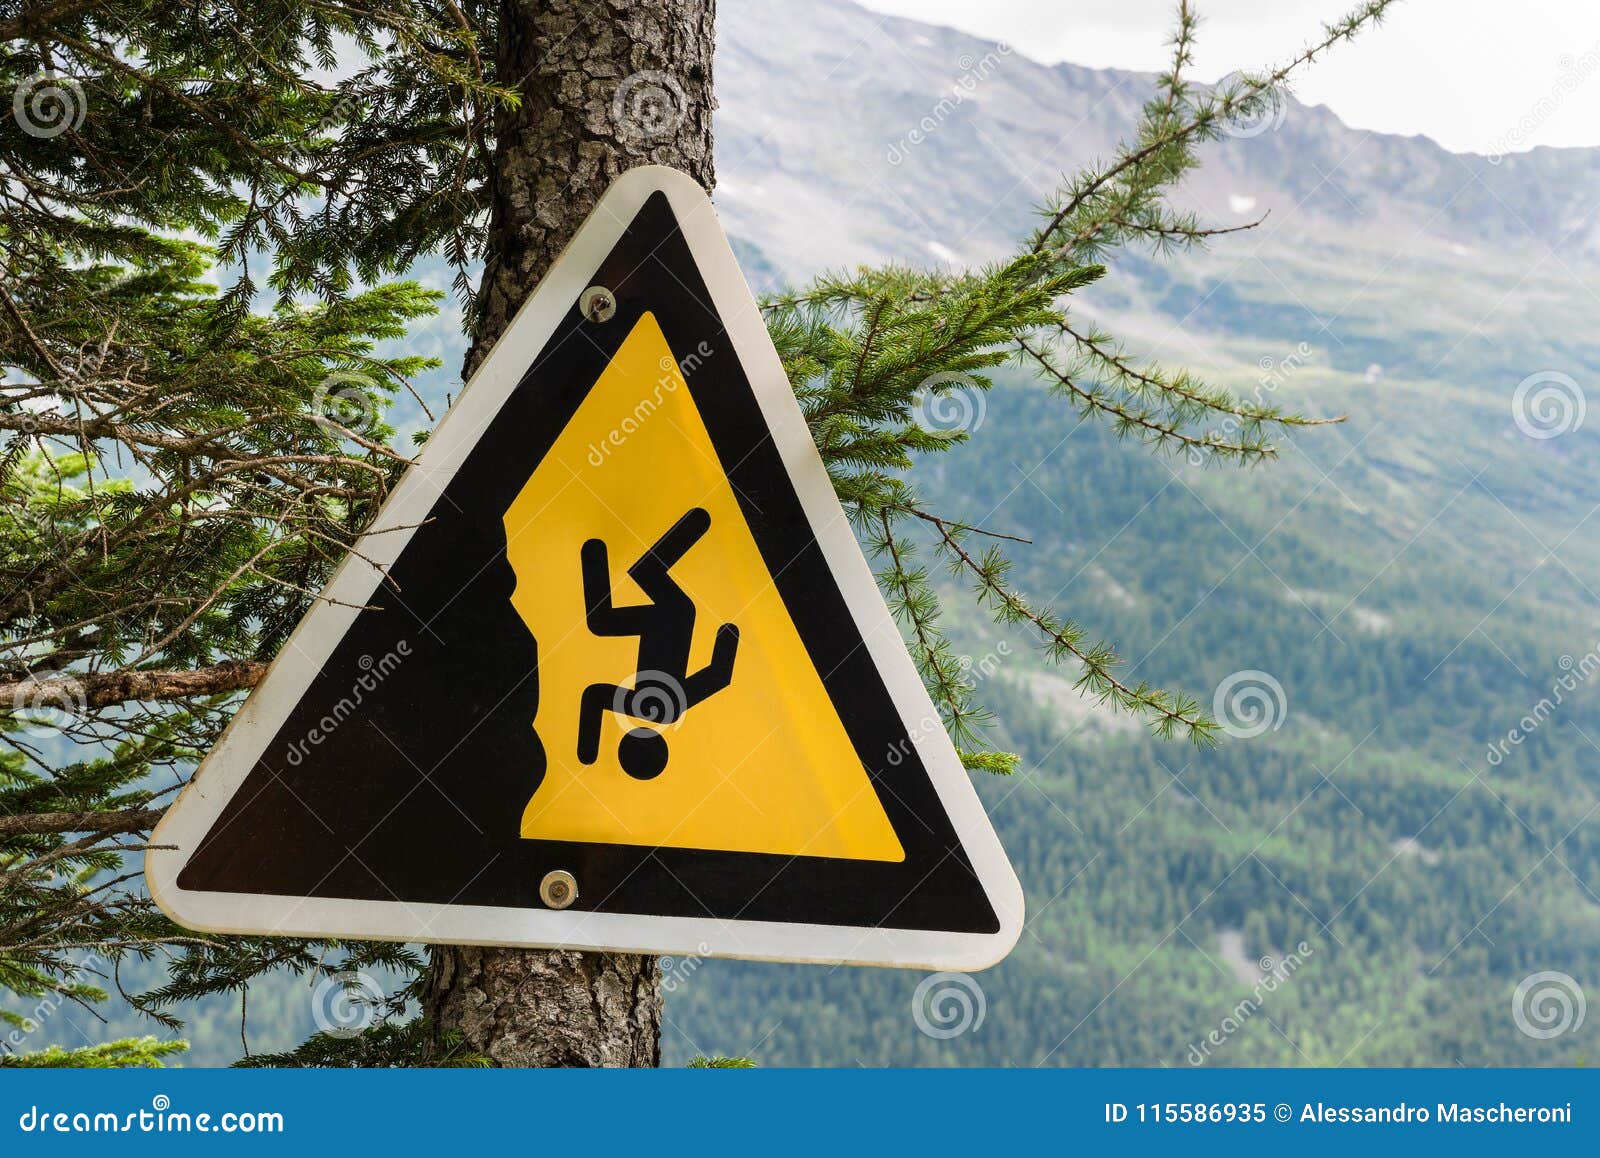 Какие основные опасности в горах